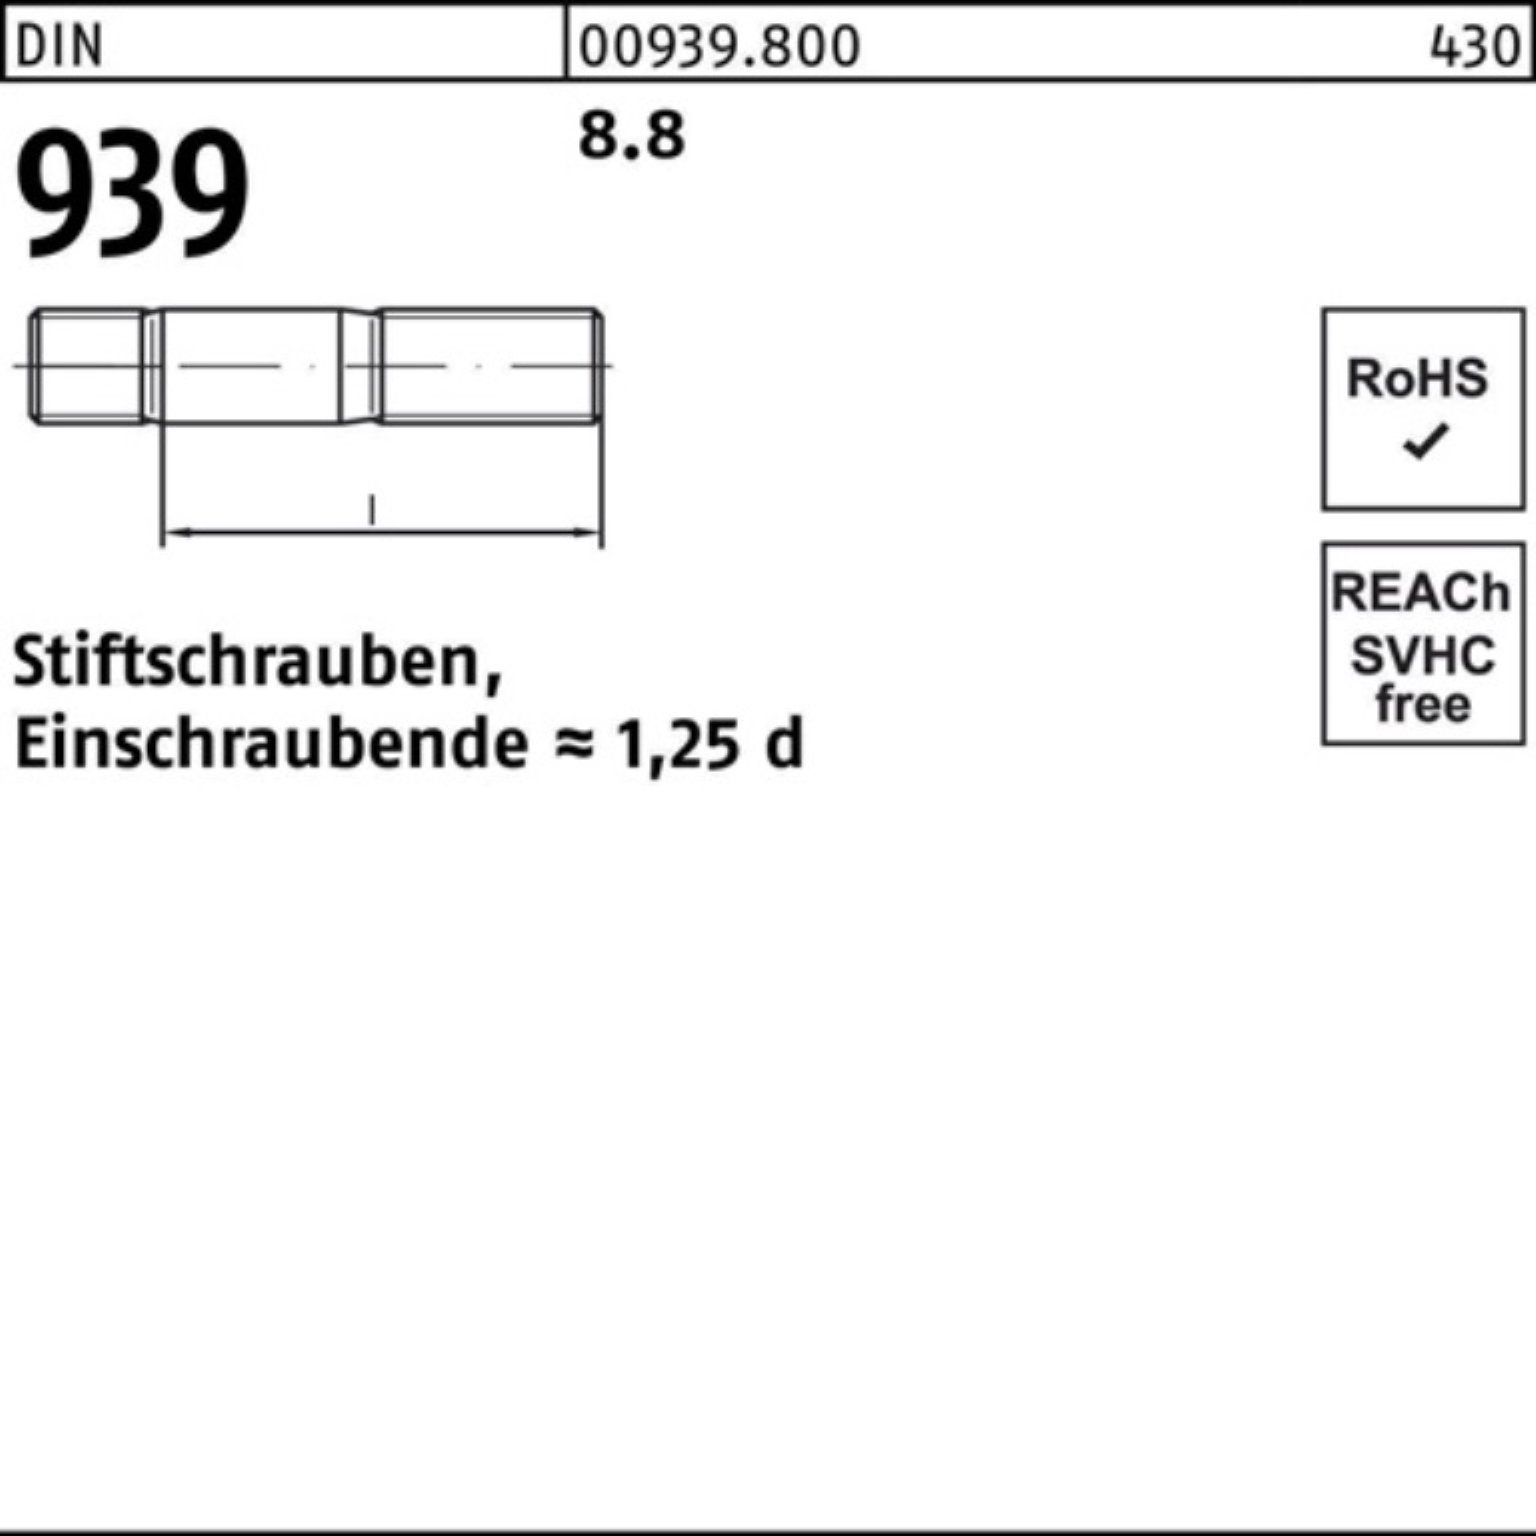 Reyher Stiftschraube 100er Pack Stiftschraube 939 8.8 S DIN Einschraubende=1,25d M20x 50 10